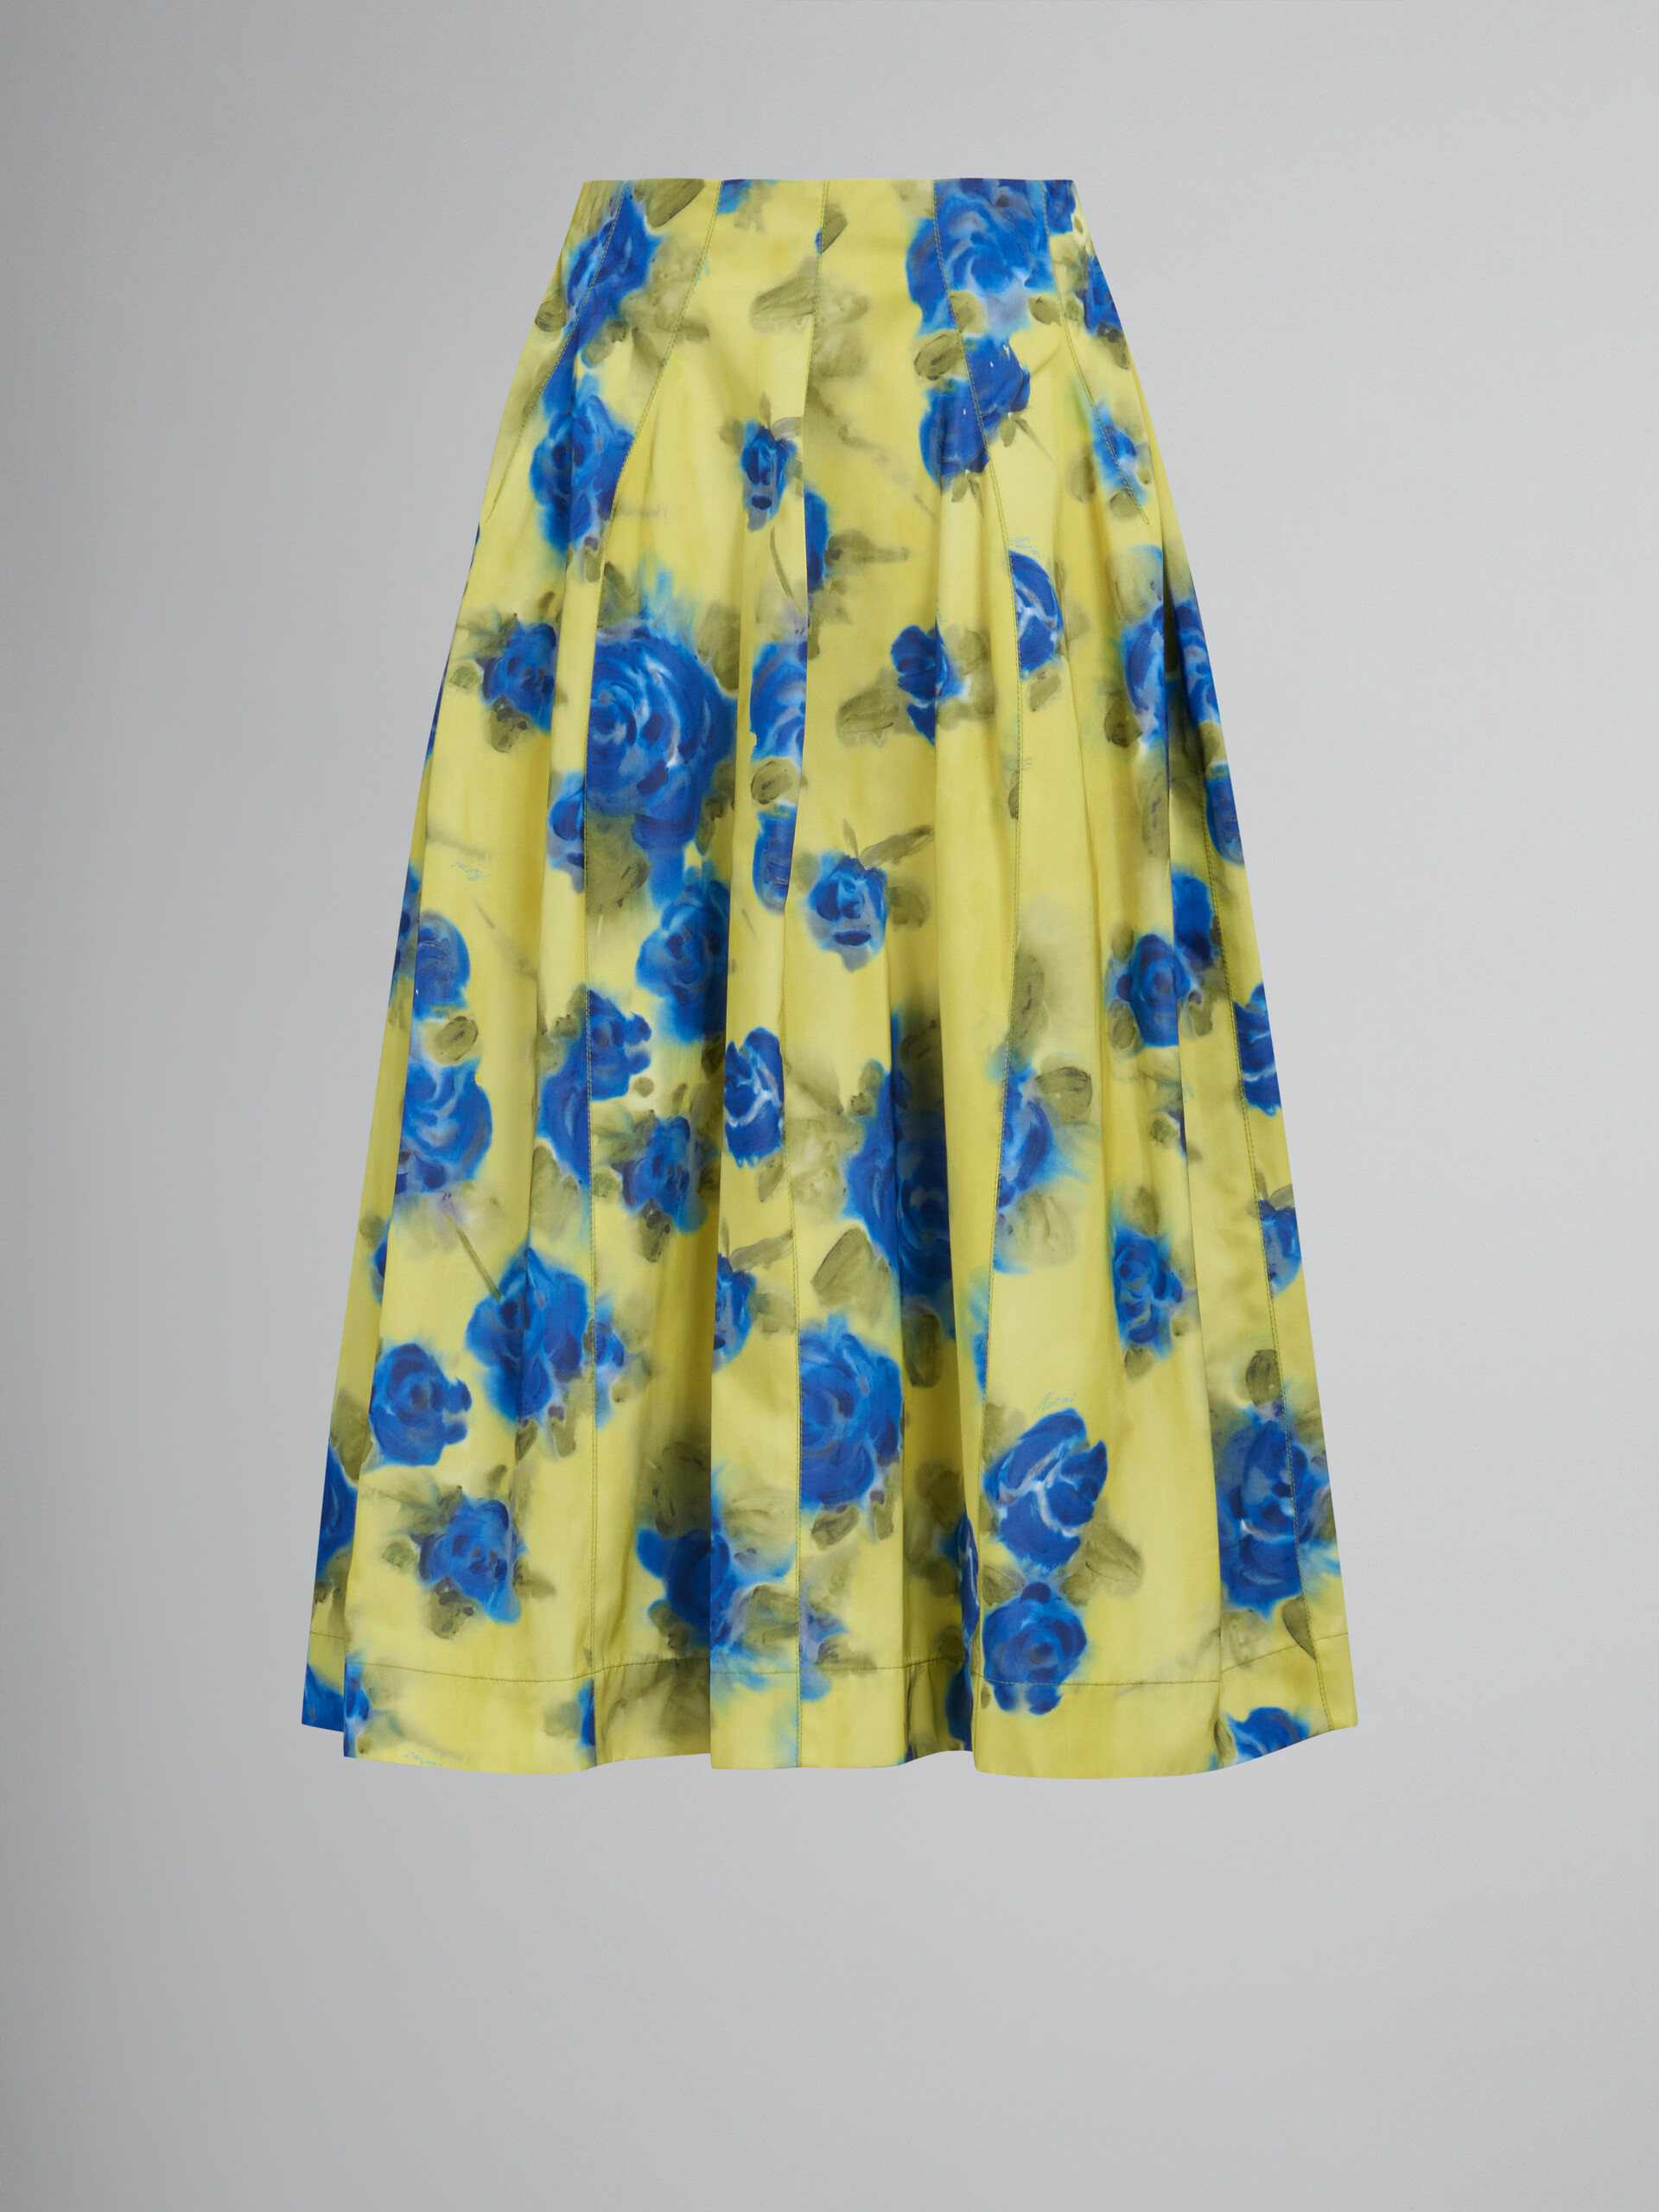 Yellow taffeta high-waisted skirt with Idyll print - Skirts - Image 1